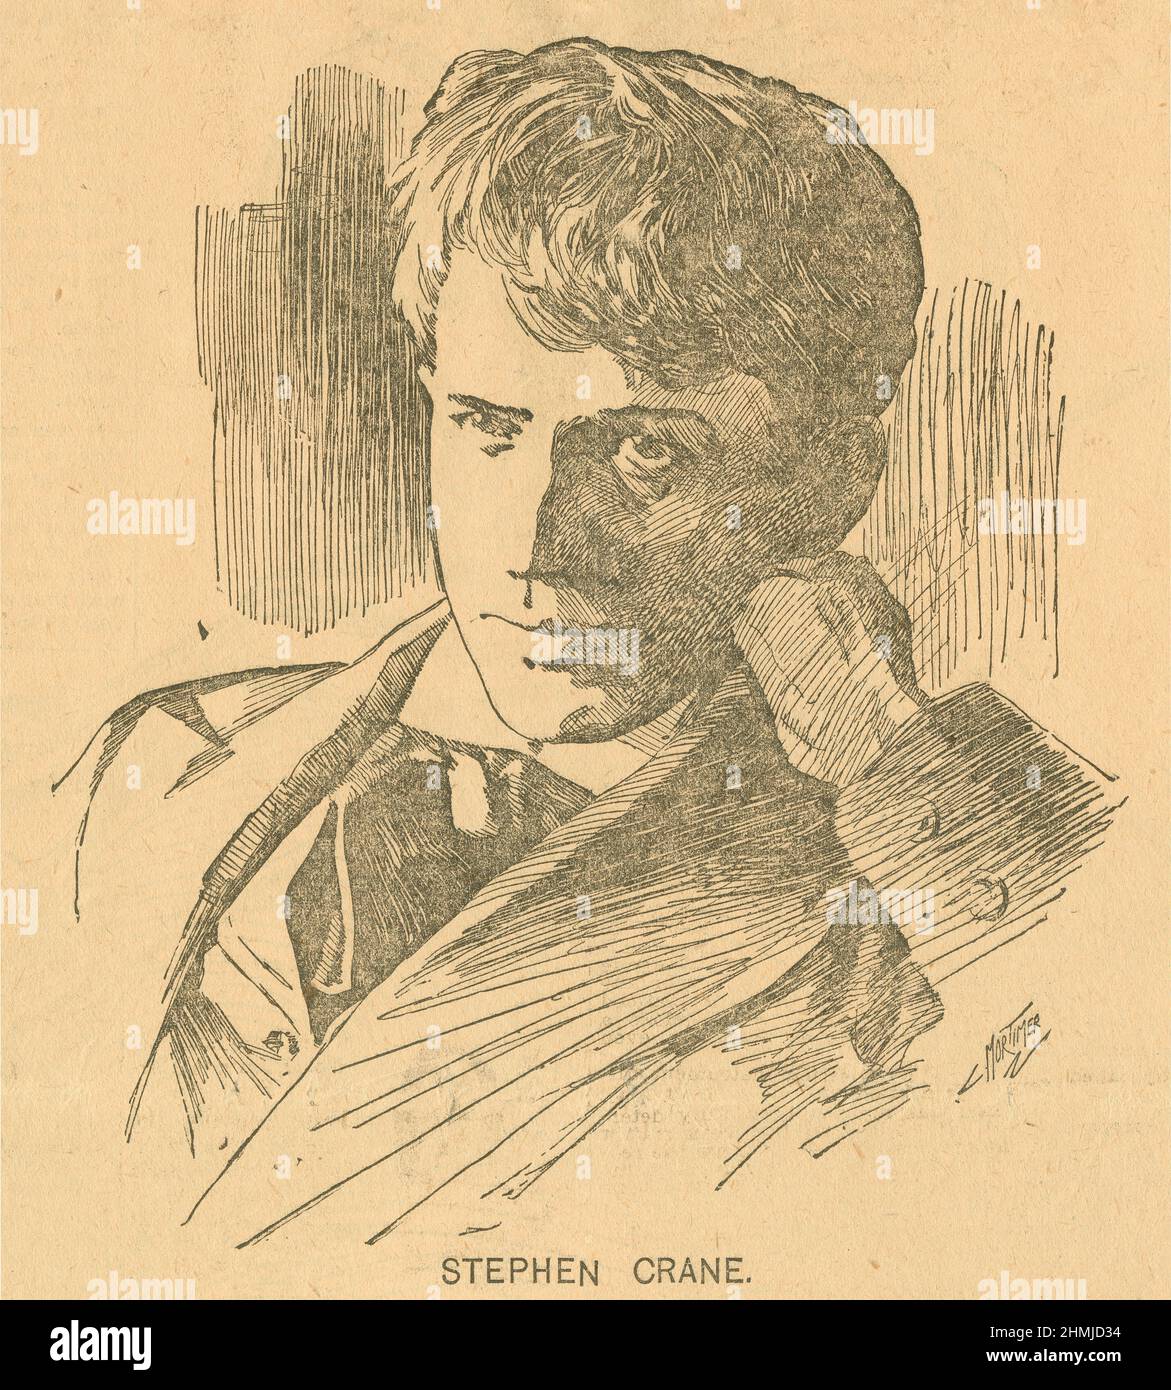 Grabado de Stephen Crane de la revista World's Sunday Magazine del 23 de febrero de 1896. Stephen Crane (1871-1900) fue un poeta, novelista y escritor de cuentos estadounidenses. FUENTE: PERIÓDICO ORIGINAL Foto de stock